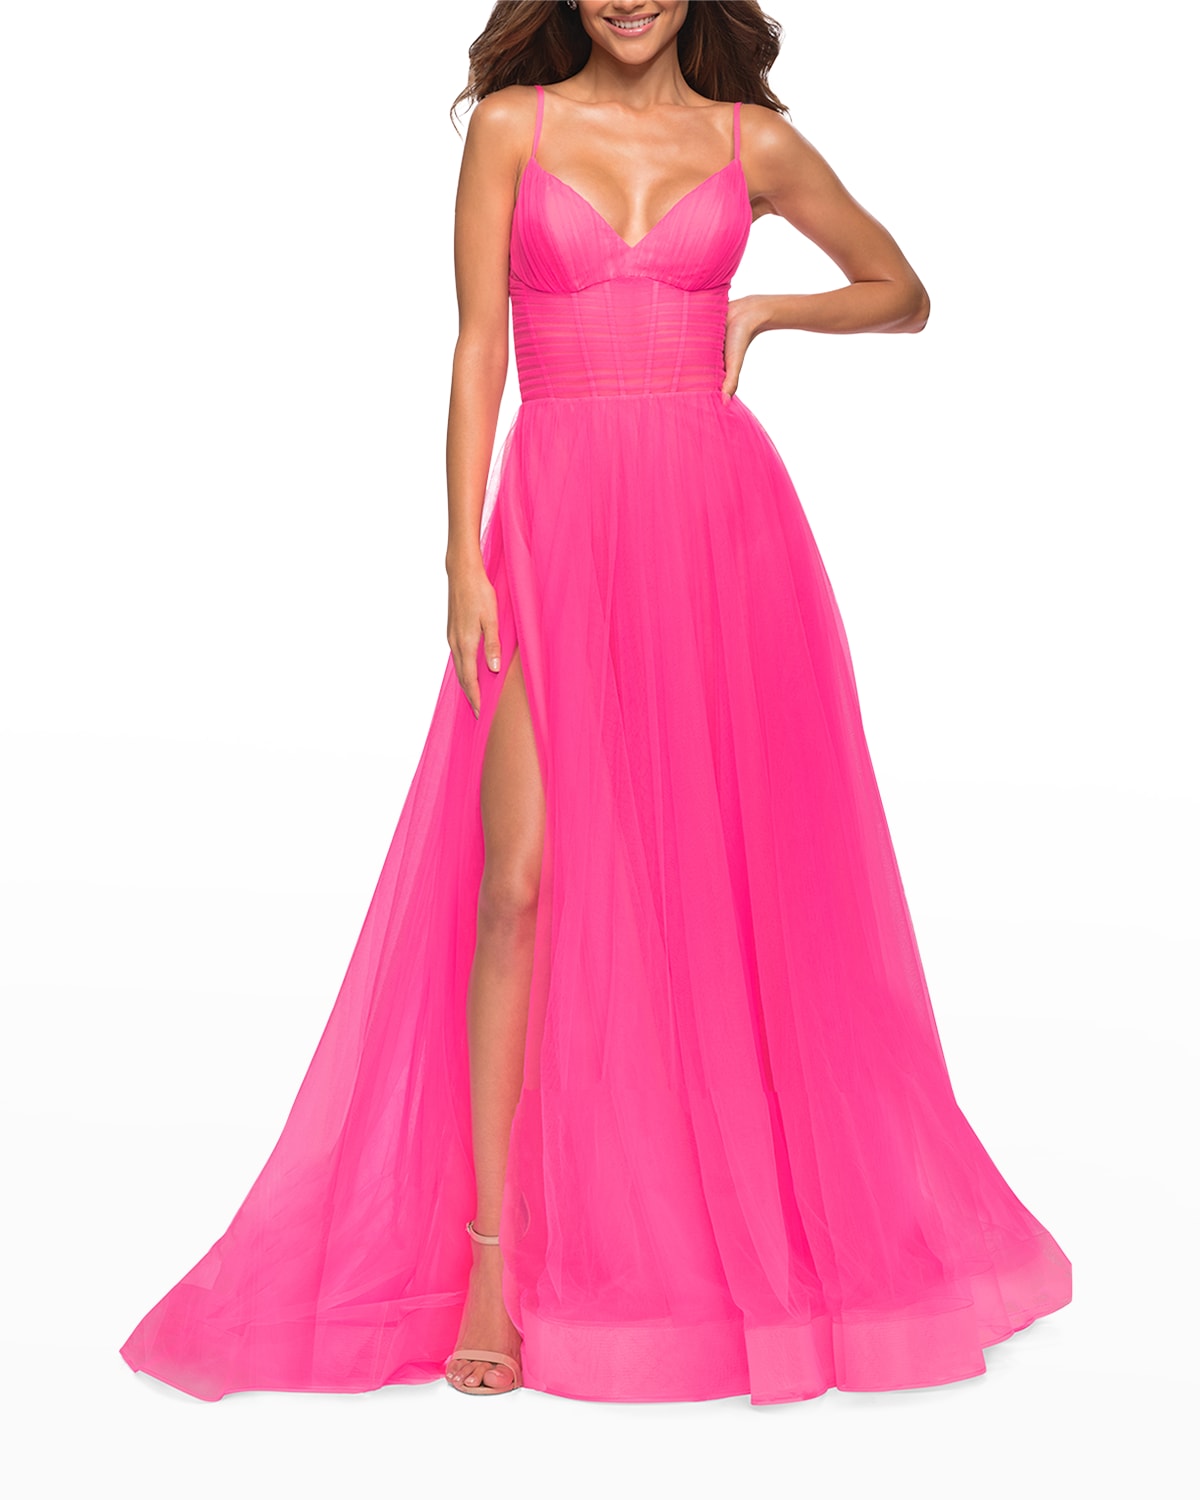 La Femme Neon Tulle Corset-Bodice A-Line Gown